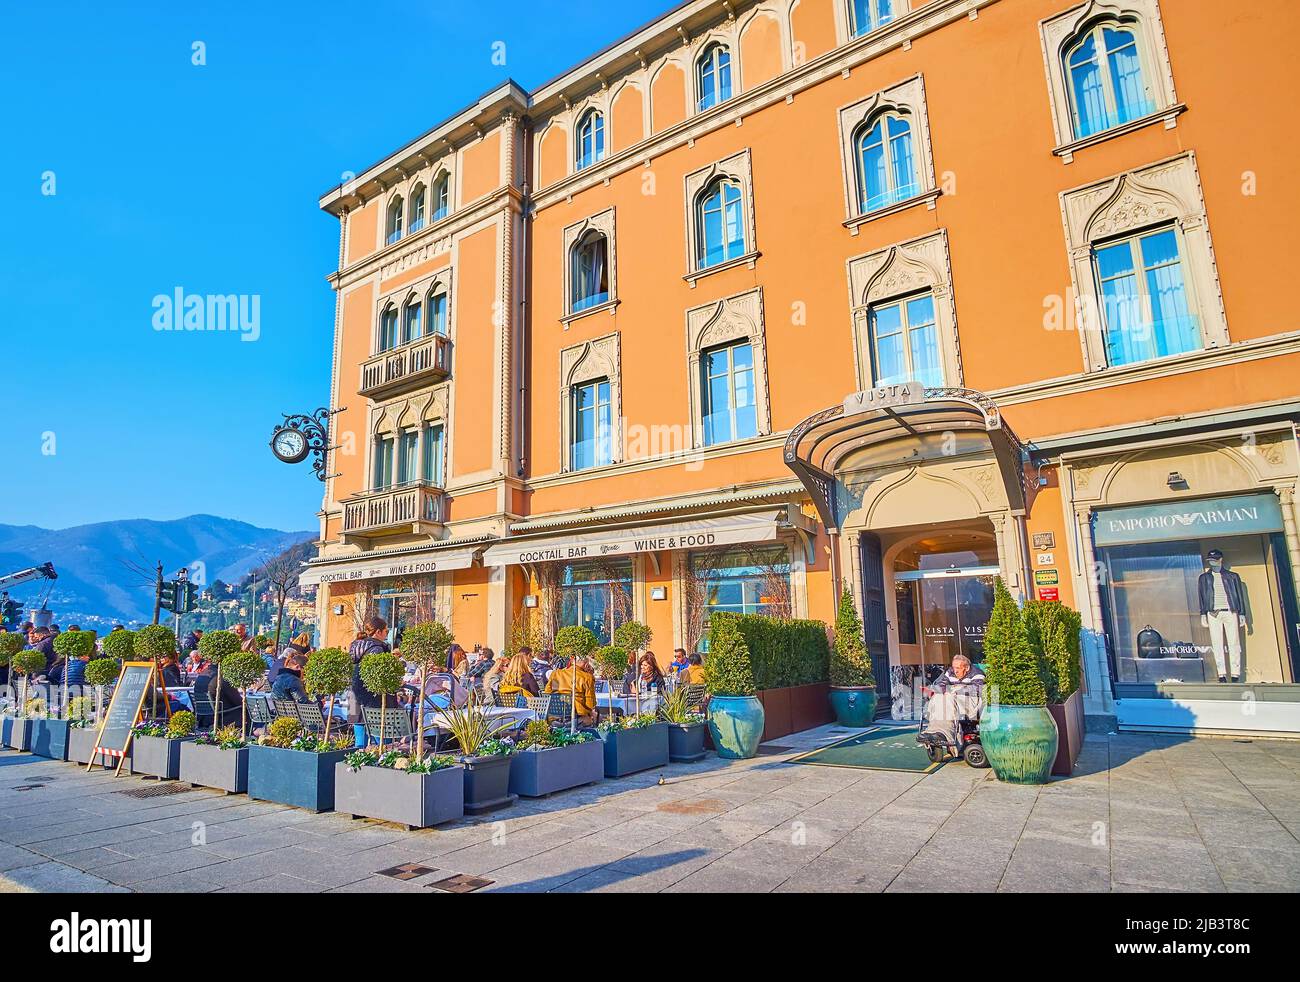 COMO, ITALIA - 20 MARZO 2022: Piazza Cavour con storiche case cittadine, negozi e terrazze all'aperto di ristoranti, il 20 marzo a Como Foto Stock